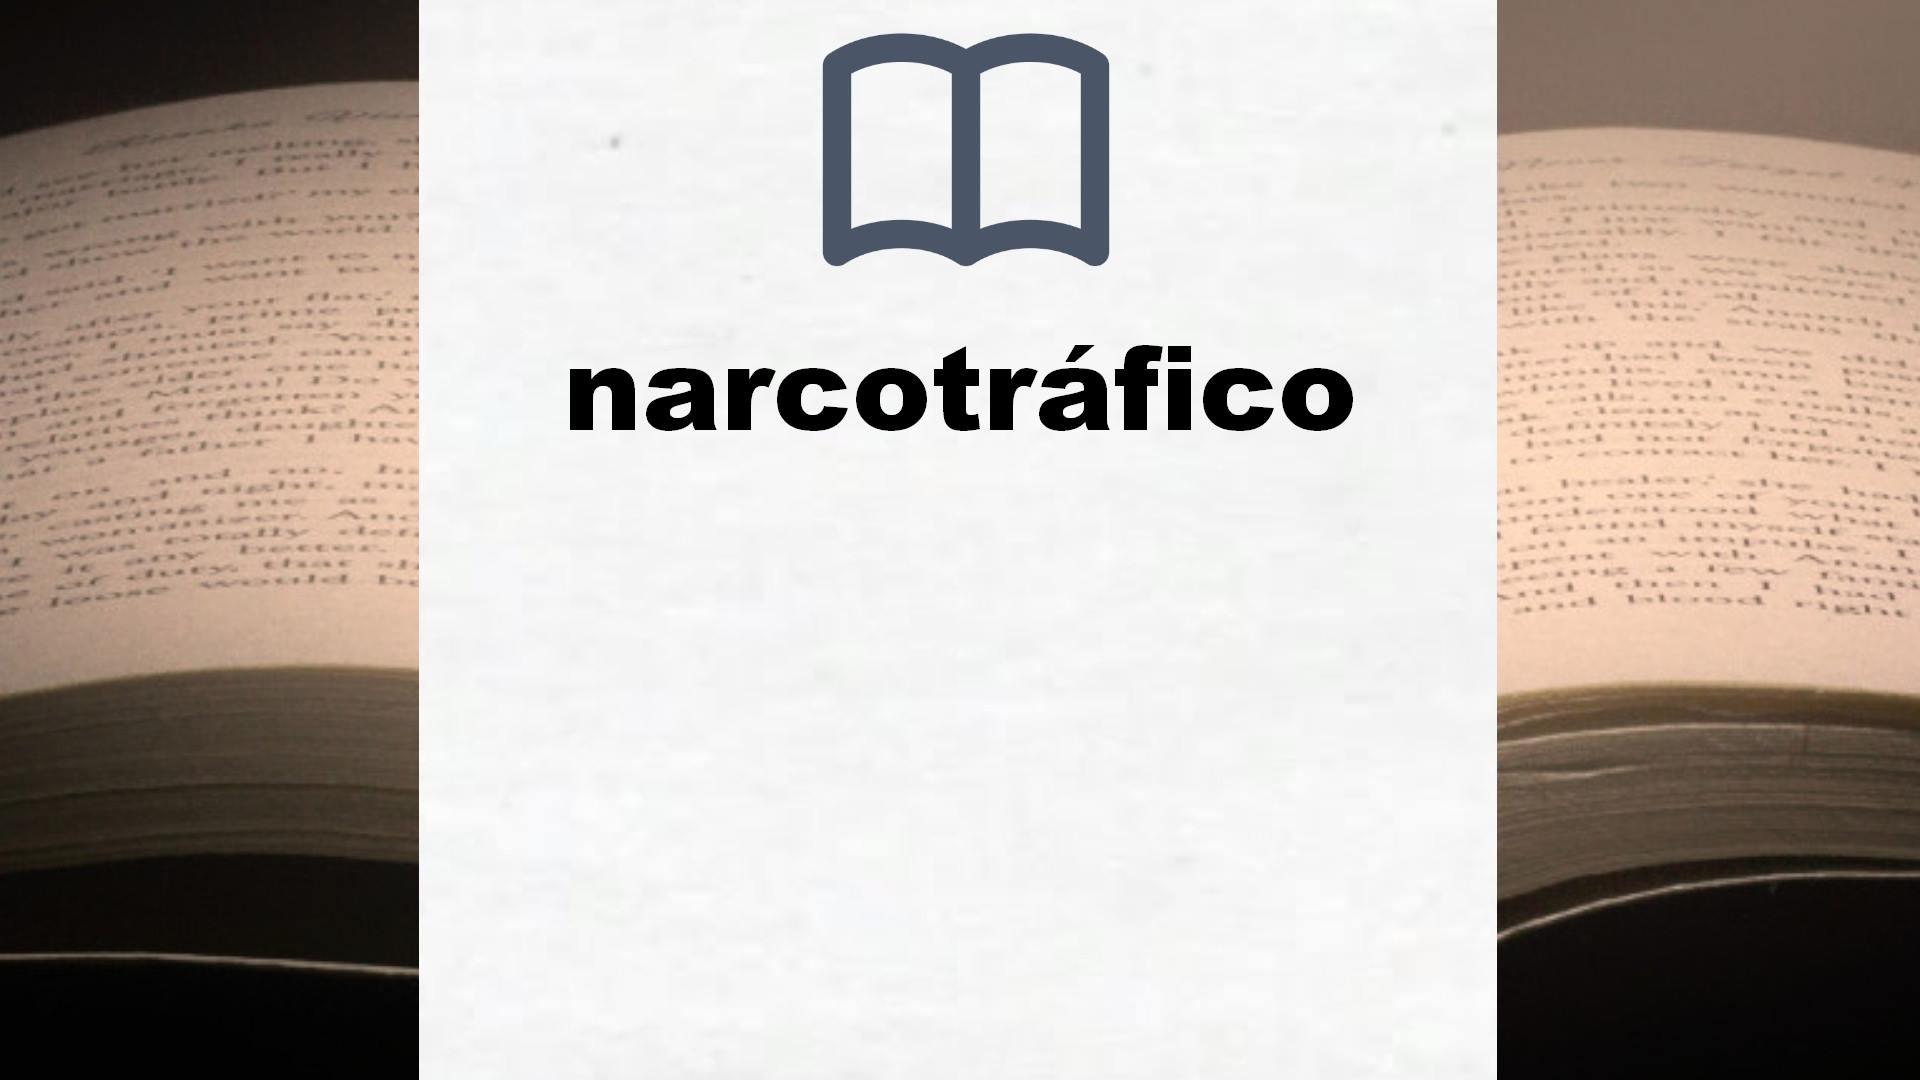 Libros sobre narcotráfico